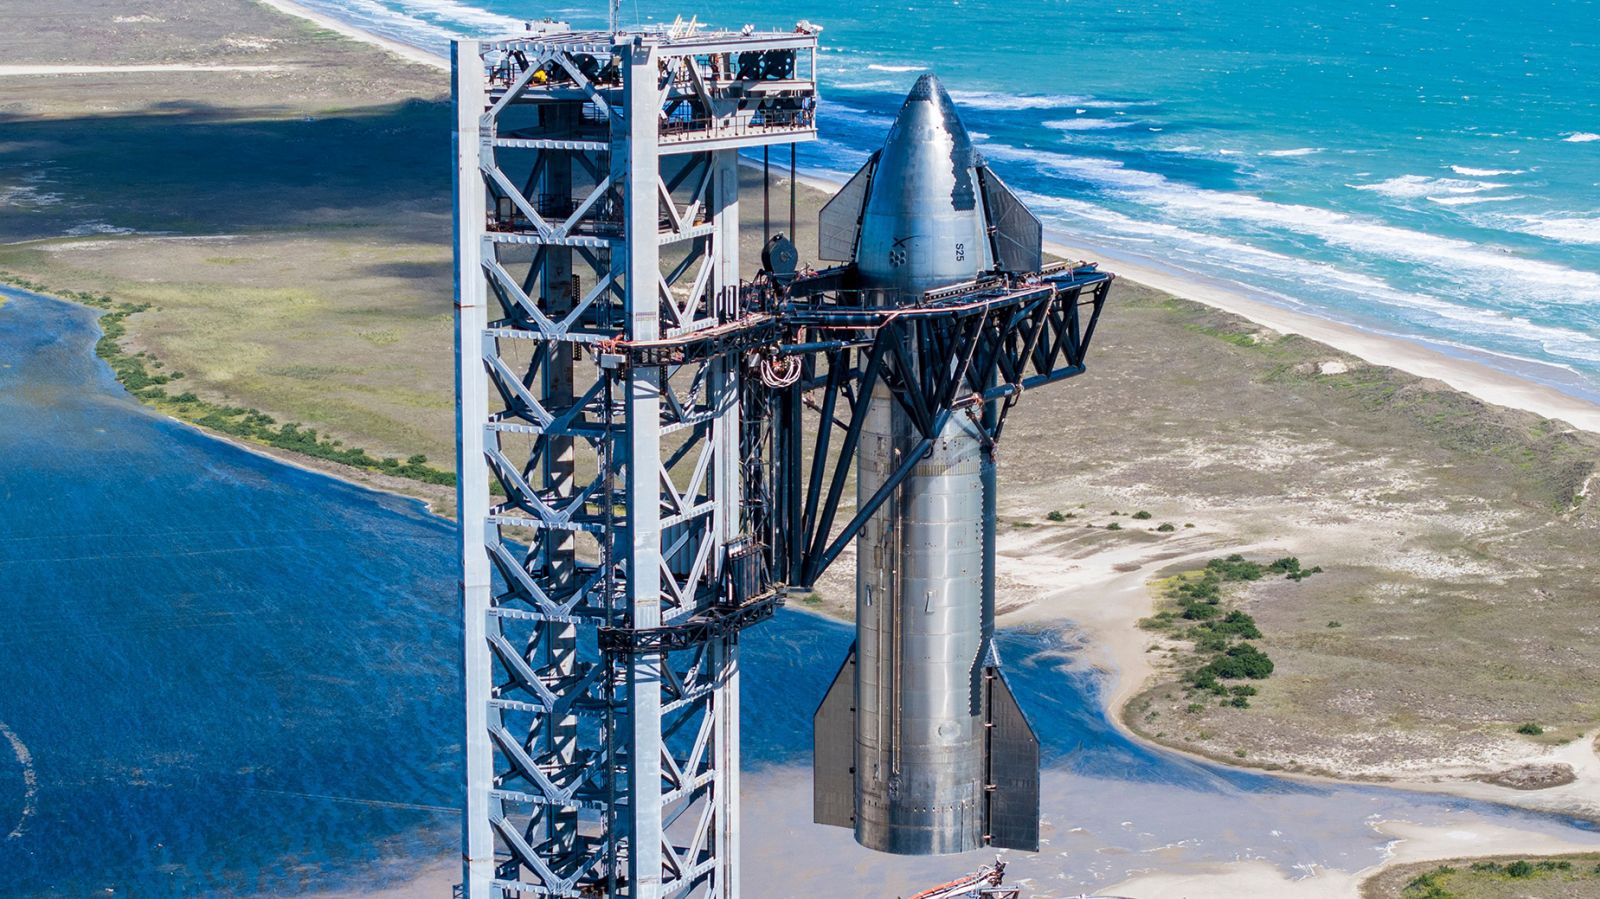 SpaceX coloca su prototipo de vehículo Starship 25 encima de un propulsor Super Heavy a mediados de octubre en Starbase en Boca Chica, Texas, mientras la compañía se prepara para su segundo vuelo de prueba. (SpaceX/UPI/Shutterstock)